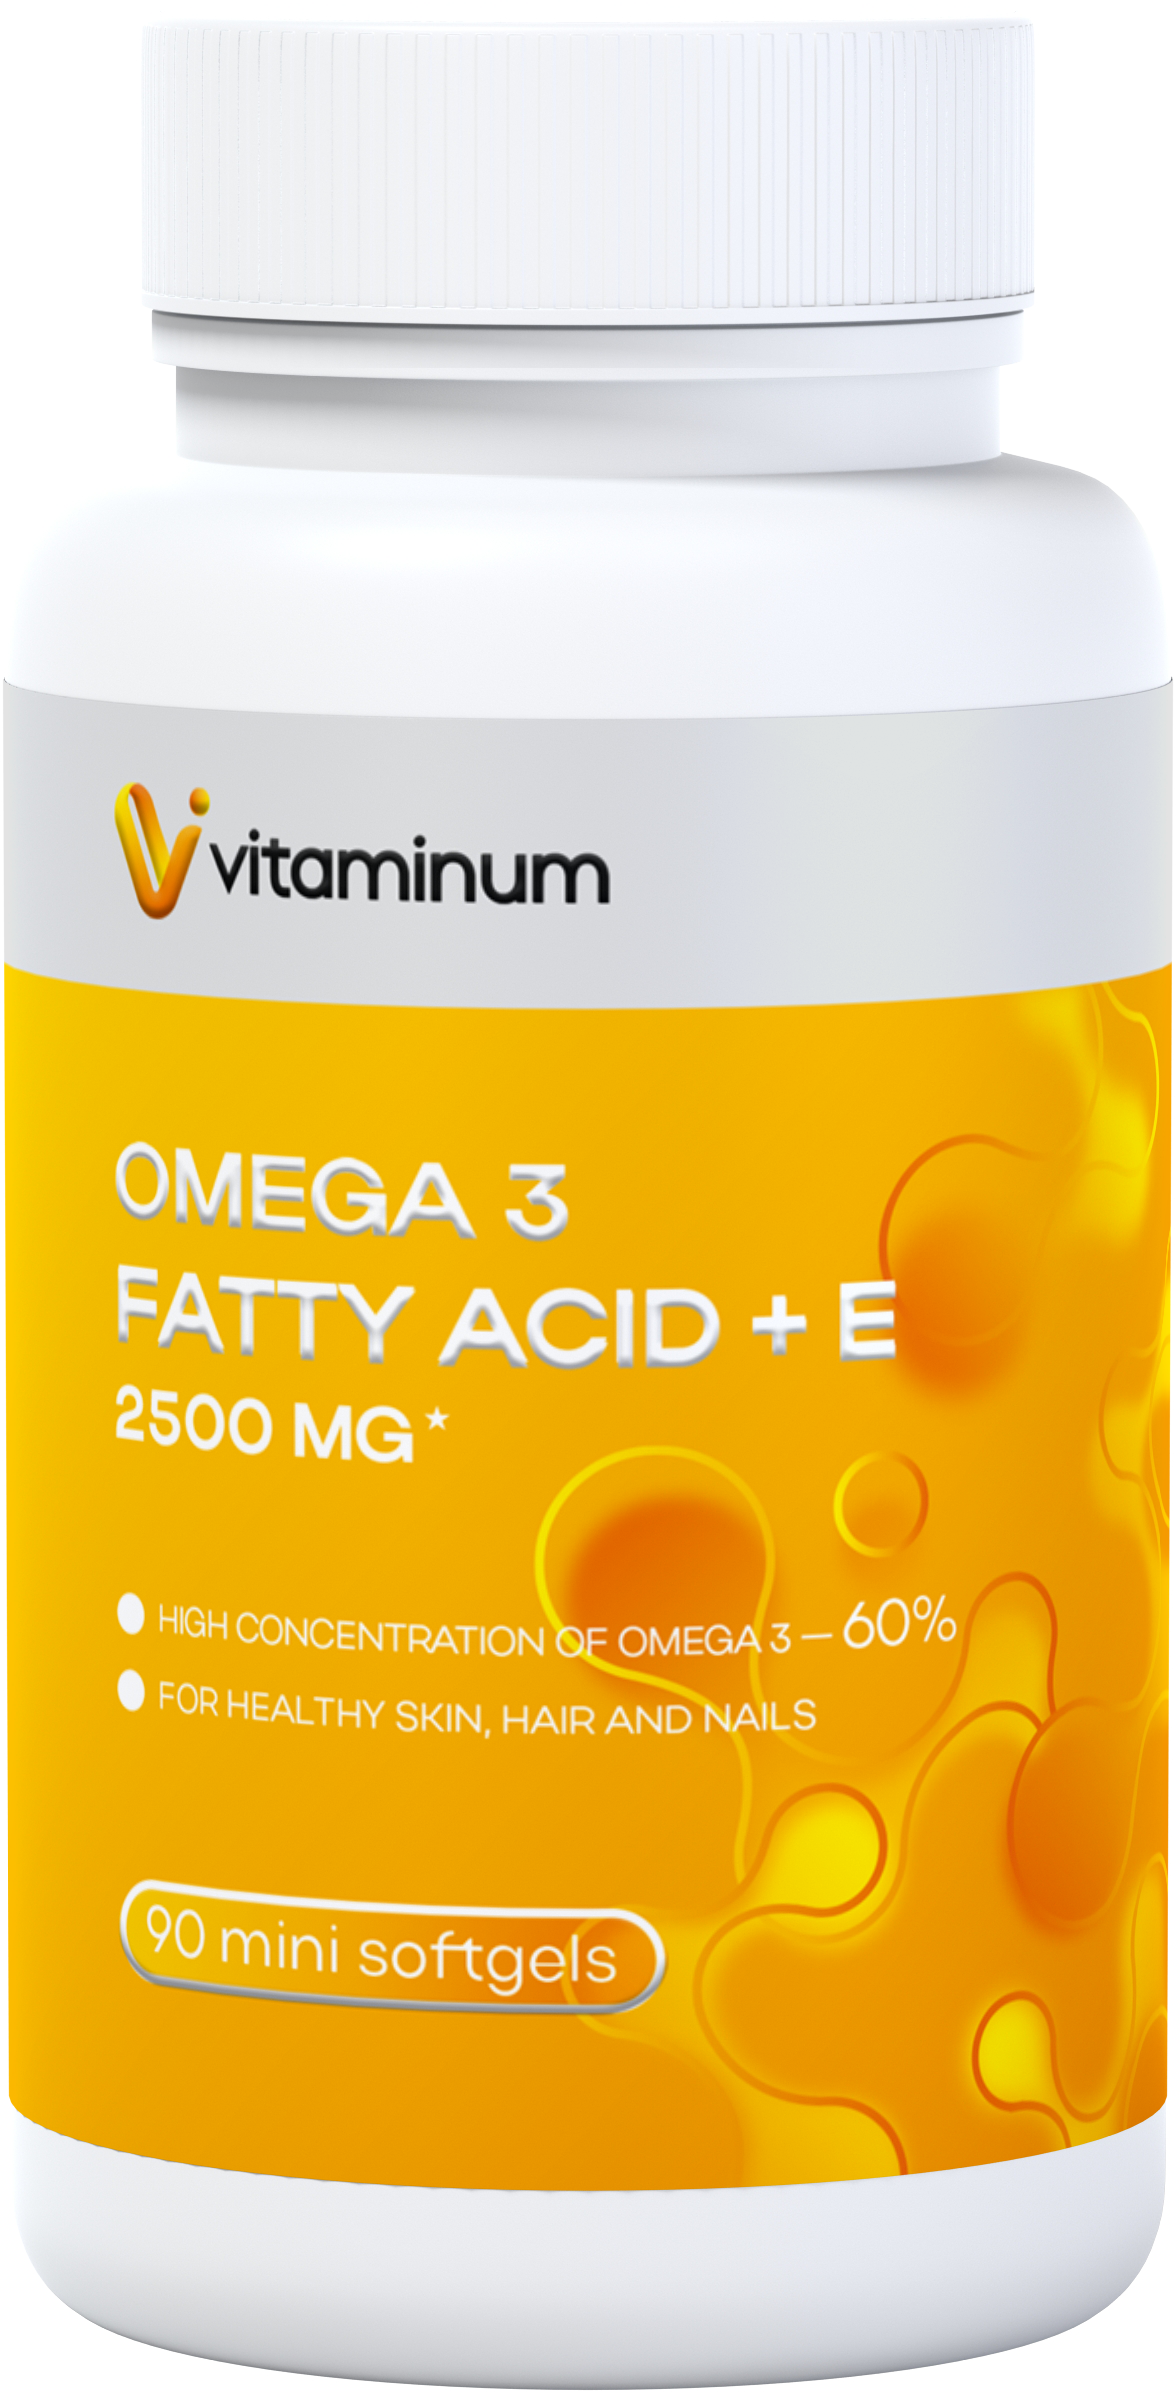  Vitaminum ОМЕГА 3 60% + витамин Е (2500 MG*) 90 капсул 700 мг   в Вологде